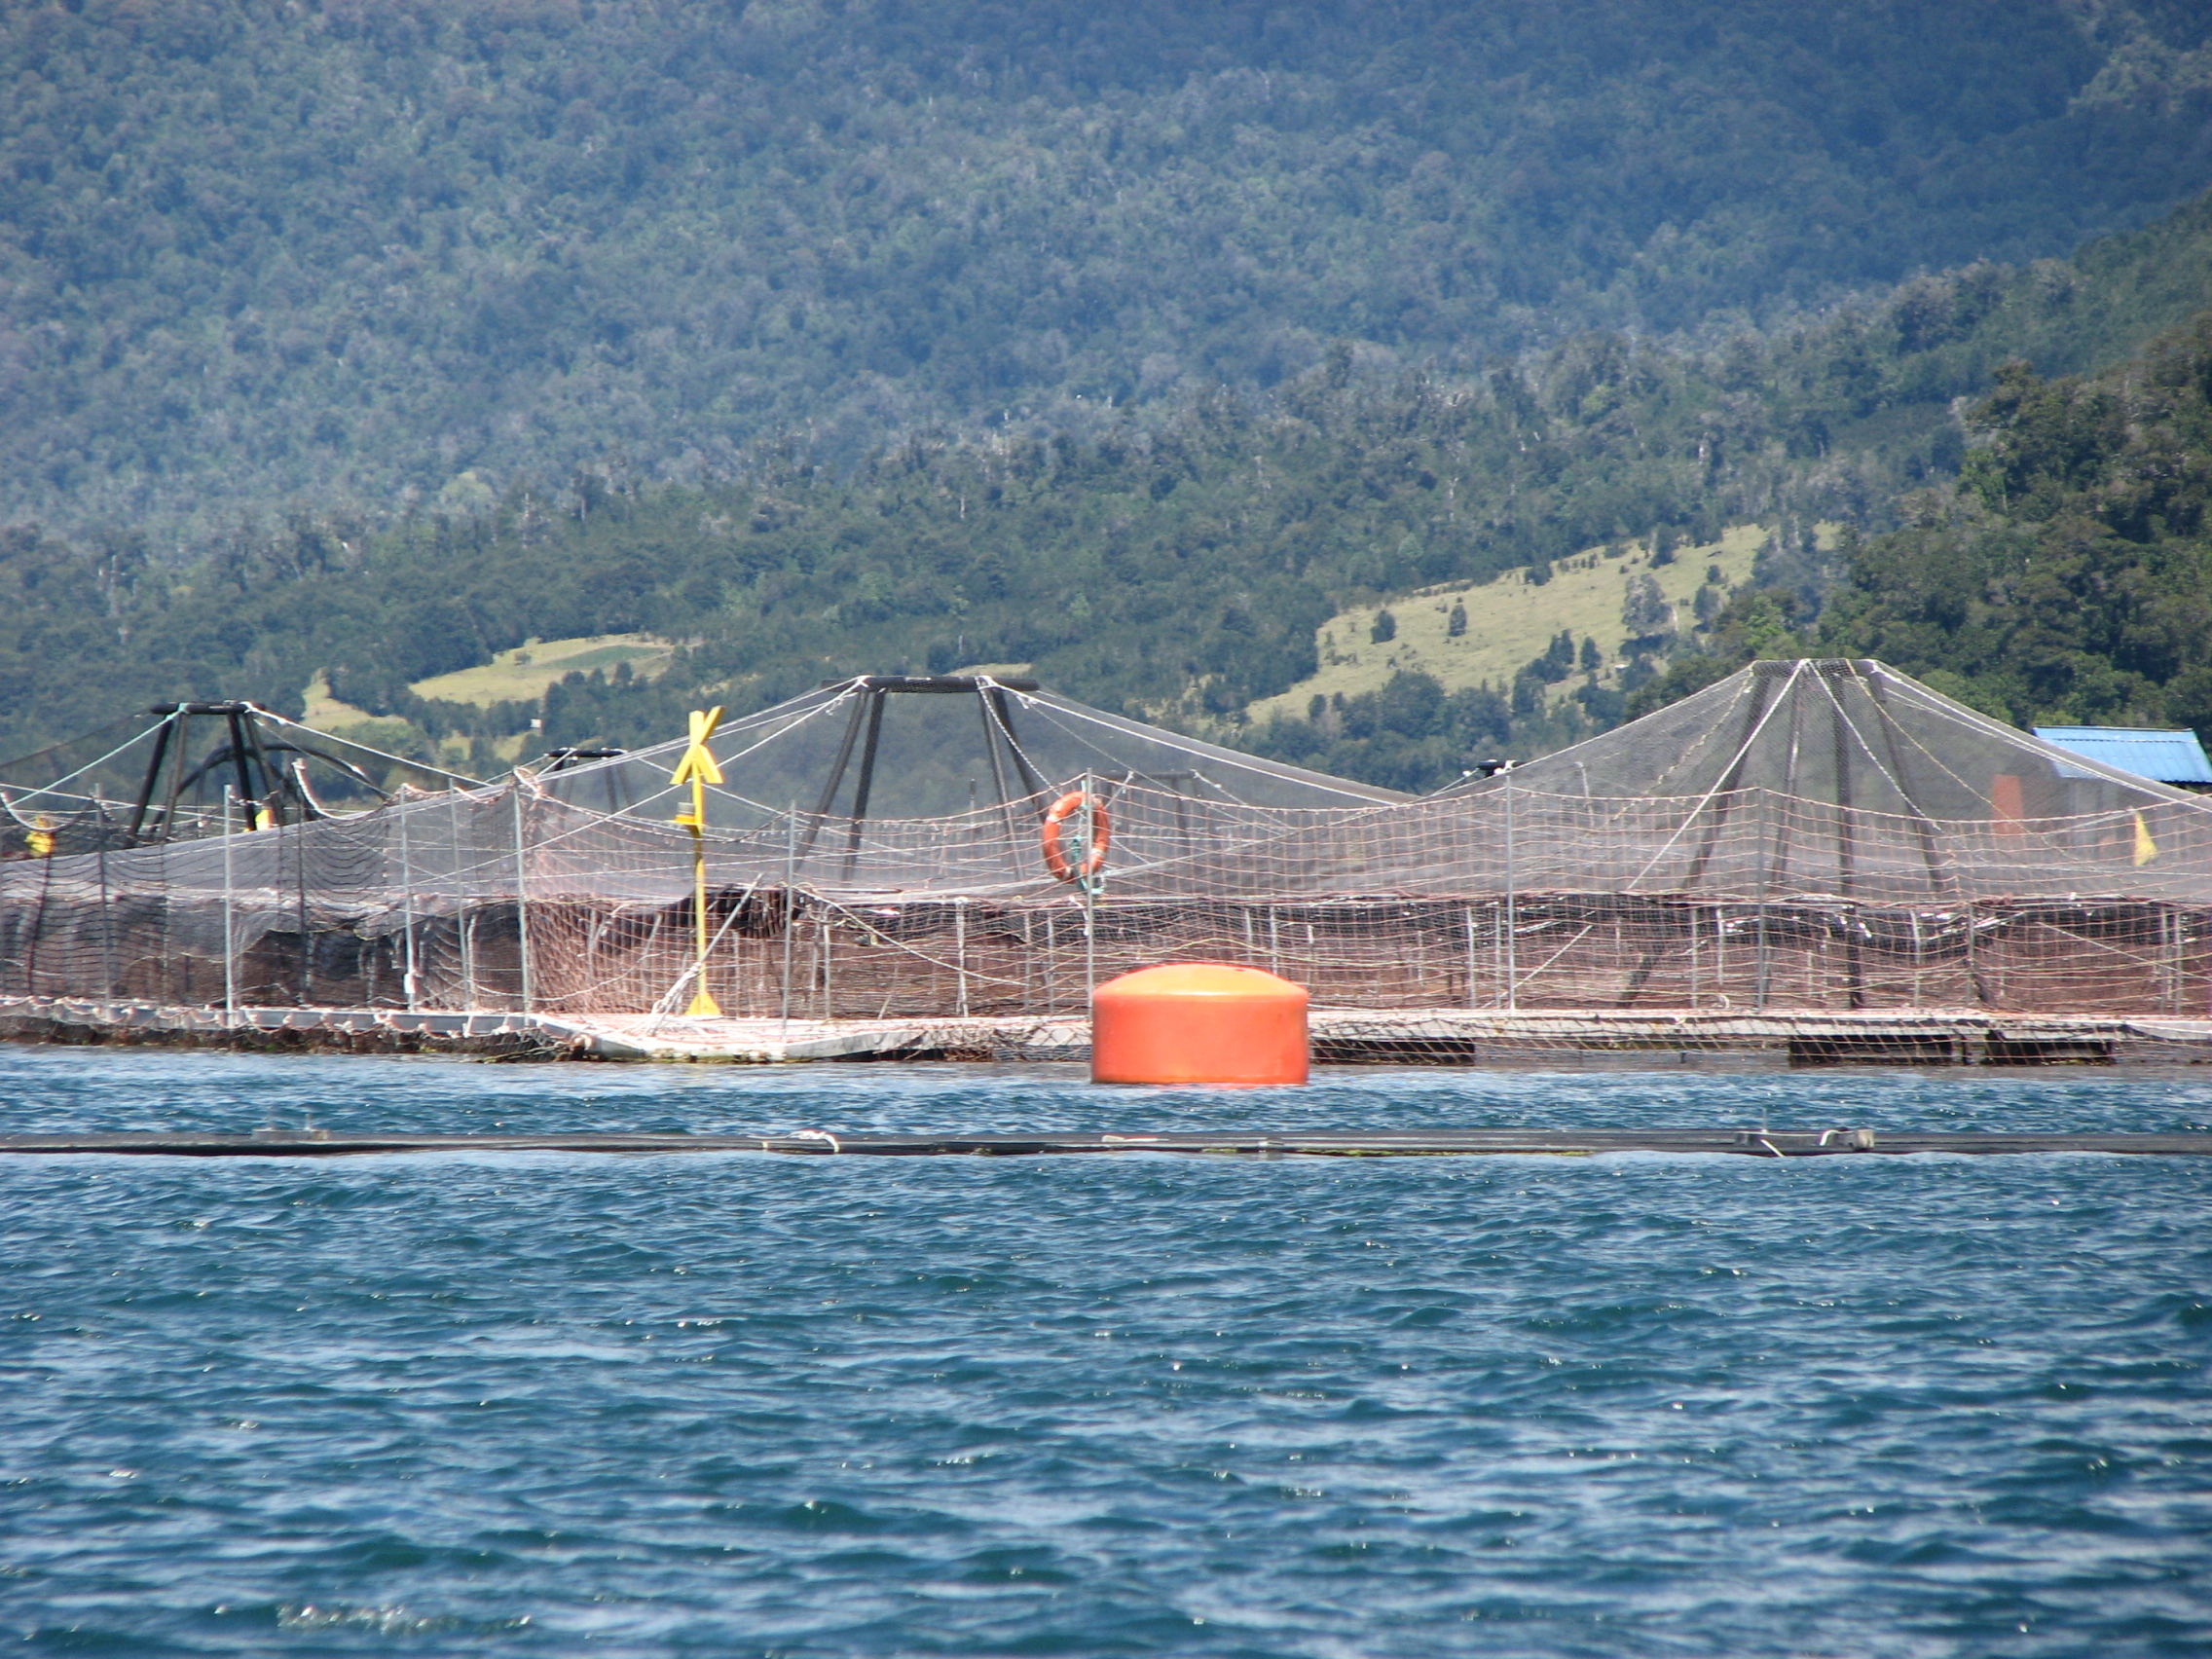 Aprueban legislar para exigir la remoción de sedimentos en concesiones de acuicultura